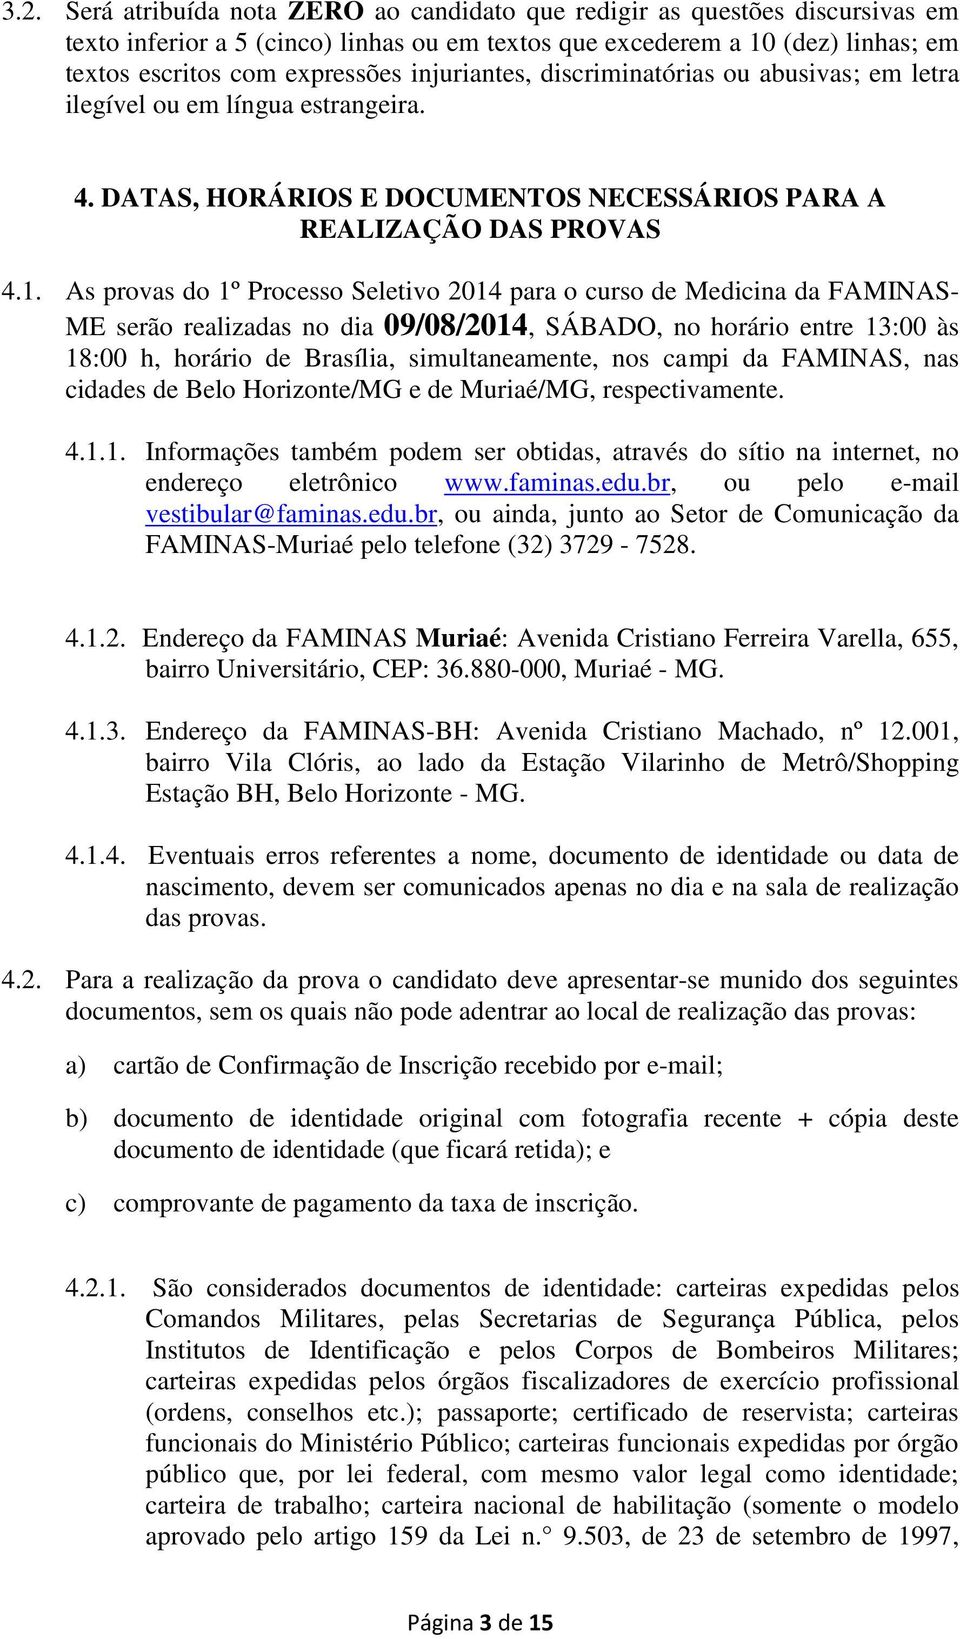 As provas do 1º Processo Seletivo 2014 para o curso de Medicina da FAMINAS- ME serão realizadas no dia 09/08/2014, SÁBADO, no horário entre 13:00 às 18:00 h, horário de Brasília, simultaneamente, nos